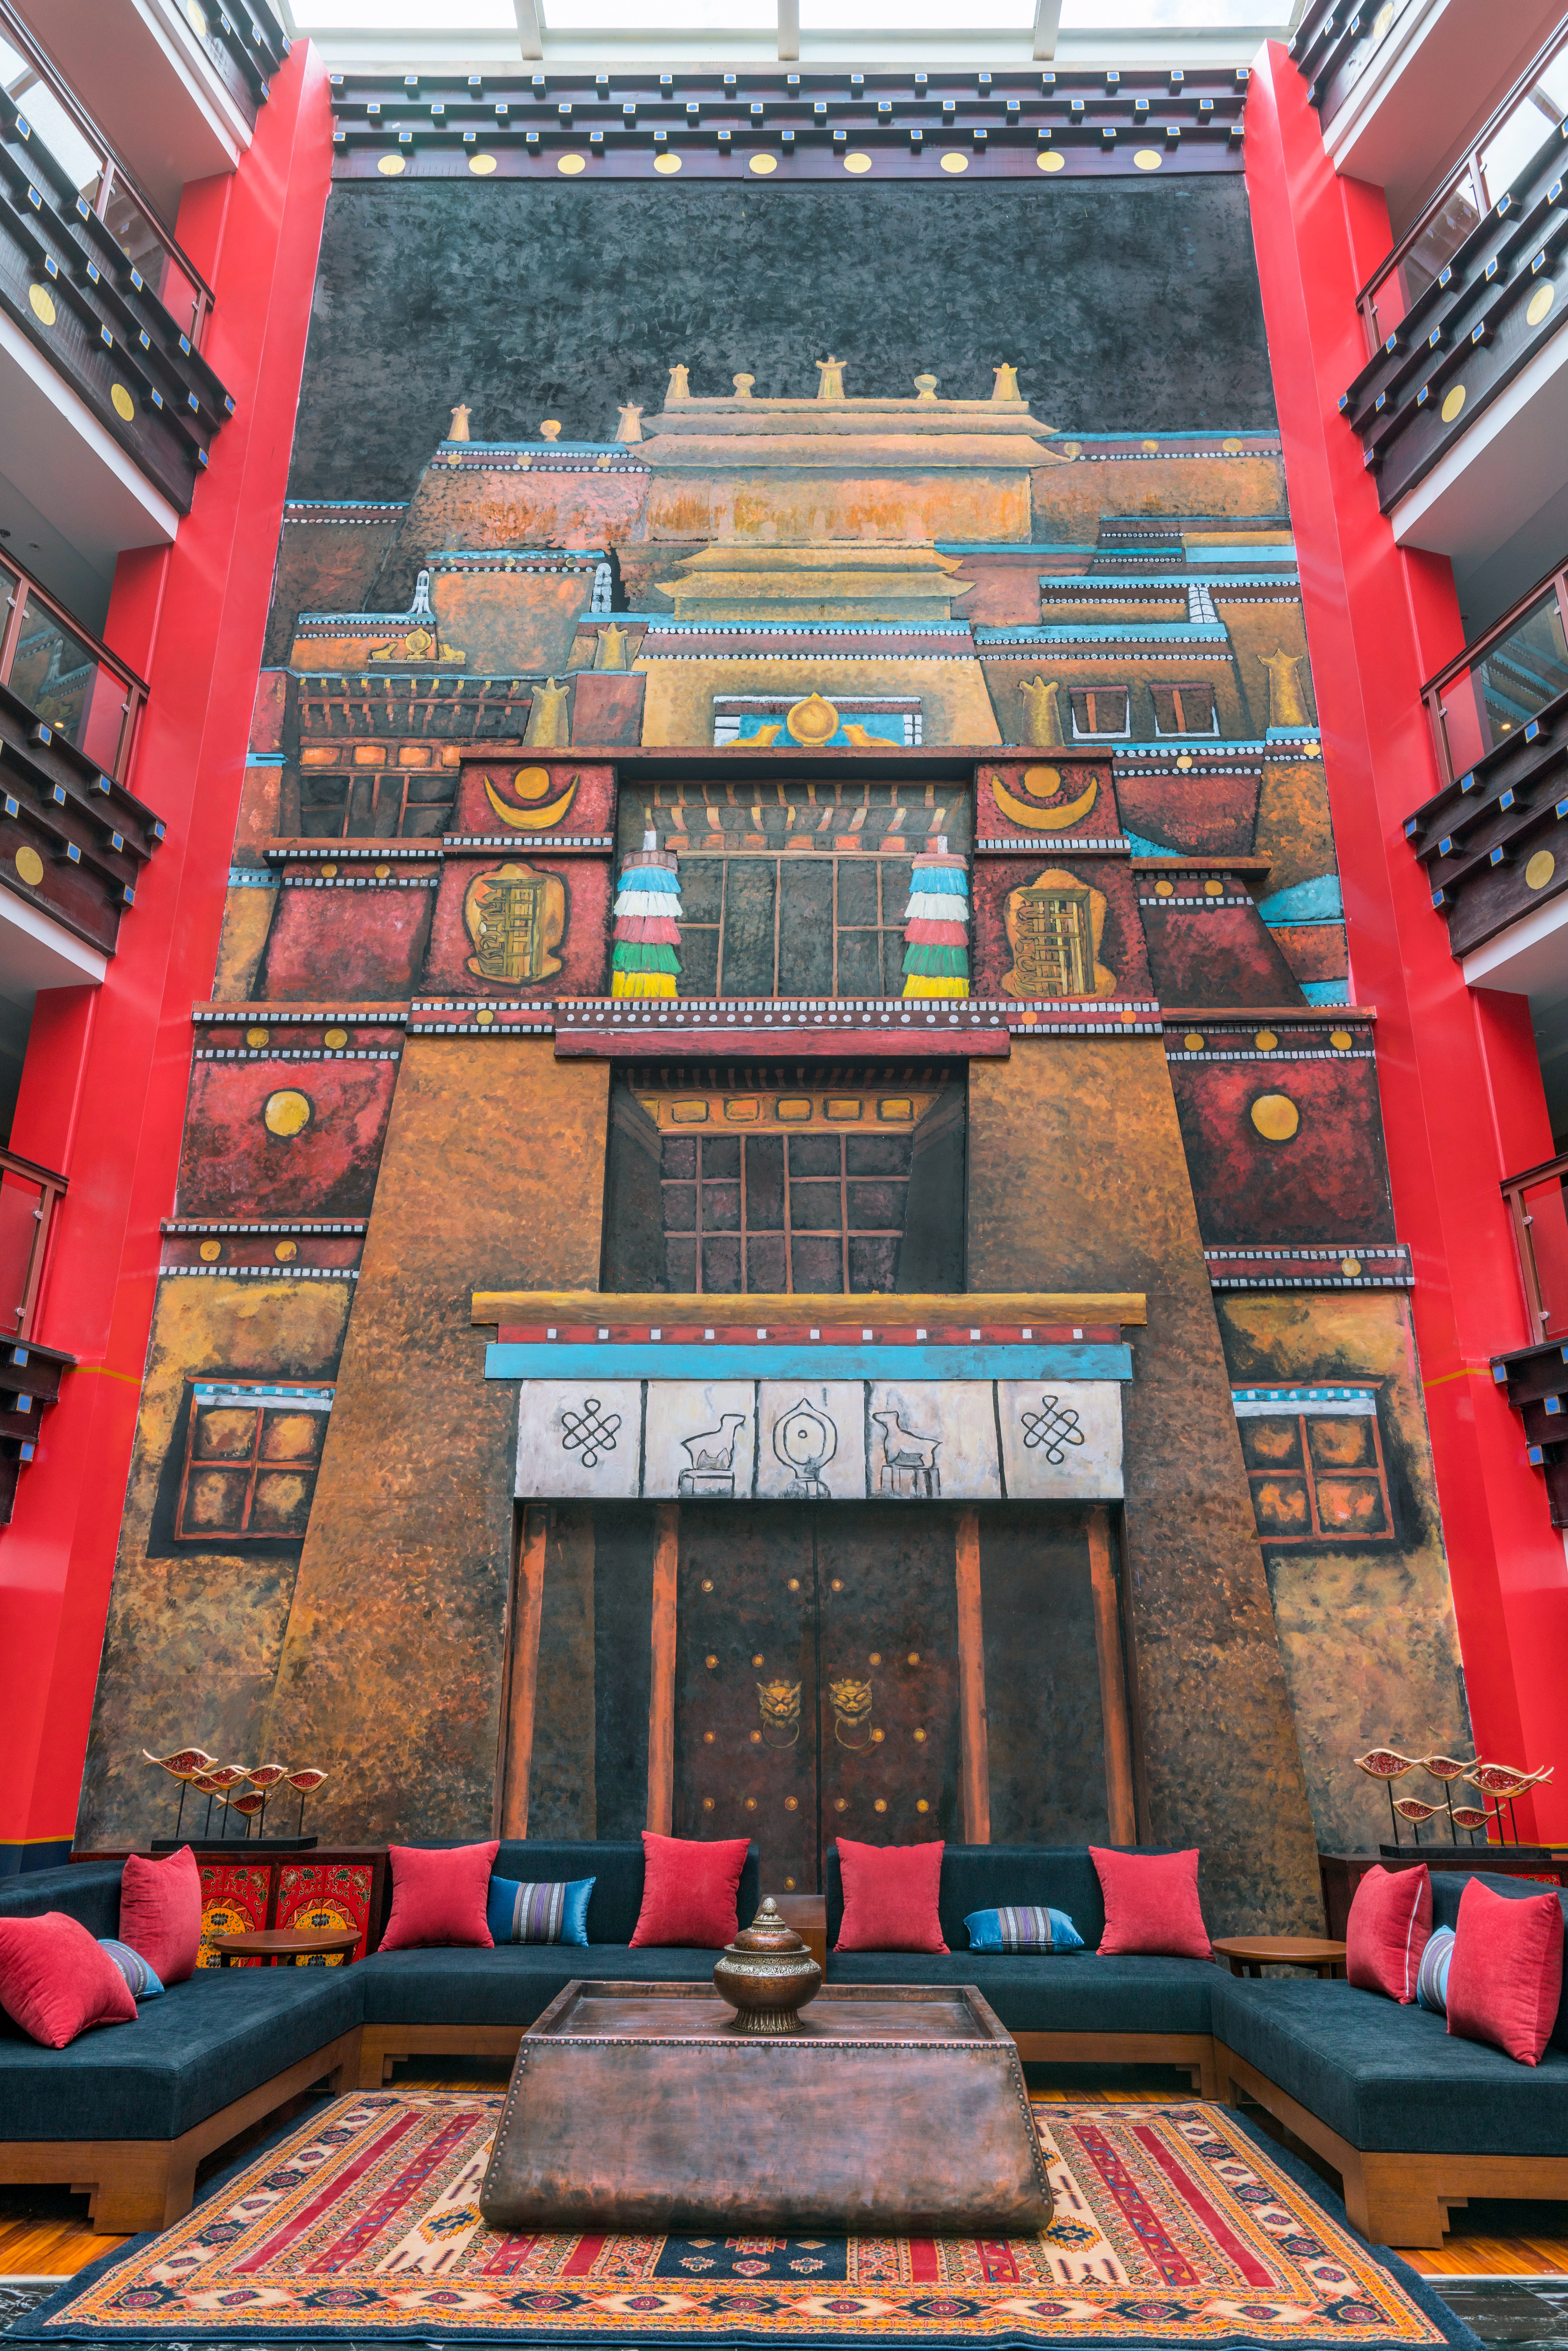 巨幅祥巴版画充分吸收藏族艺术中无限丰富的符号和审美资源，表现出强烈的民族性、地域性、时代性以及设计师个人的创作风格。